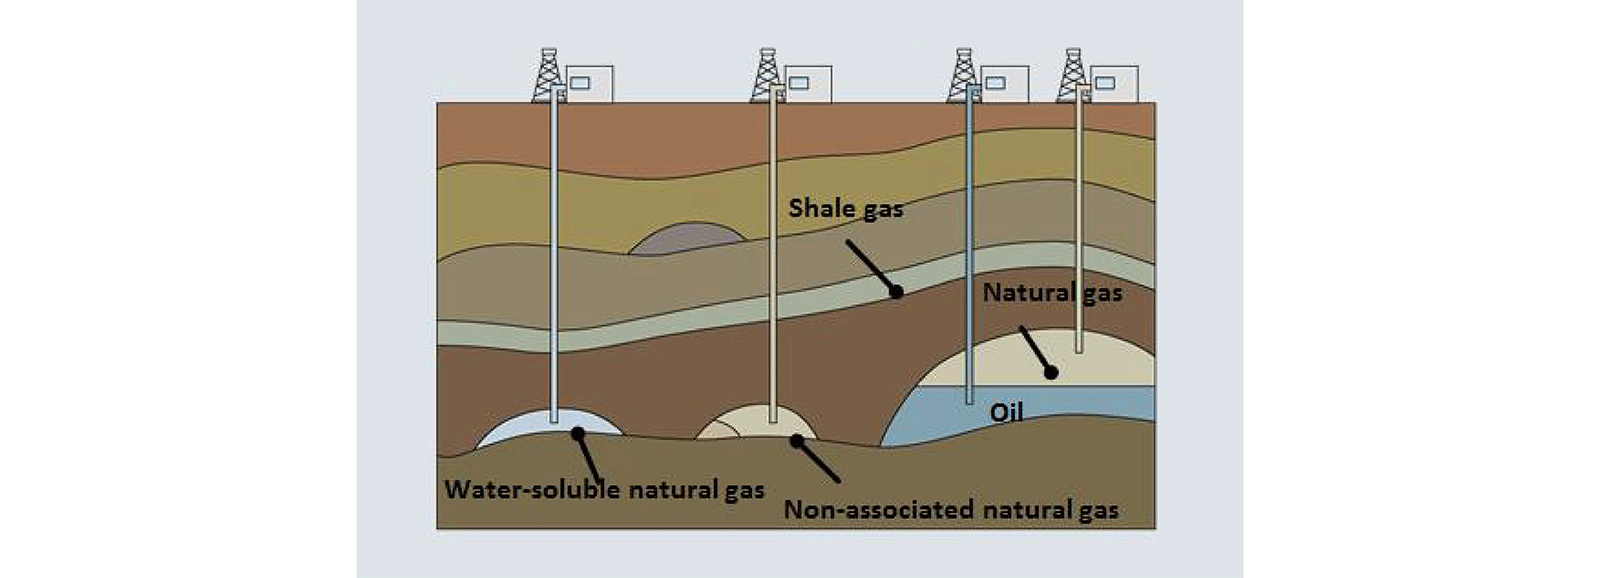 Extração de gás natural convencional